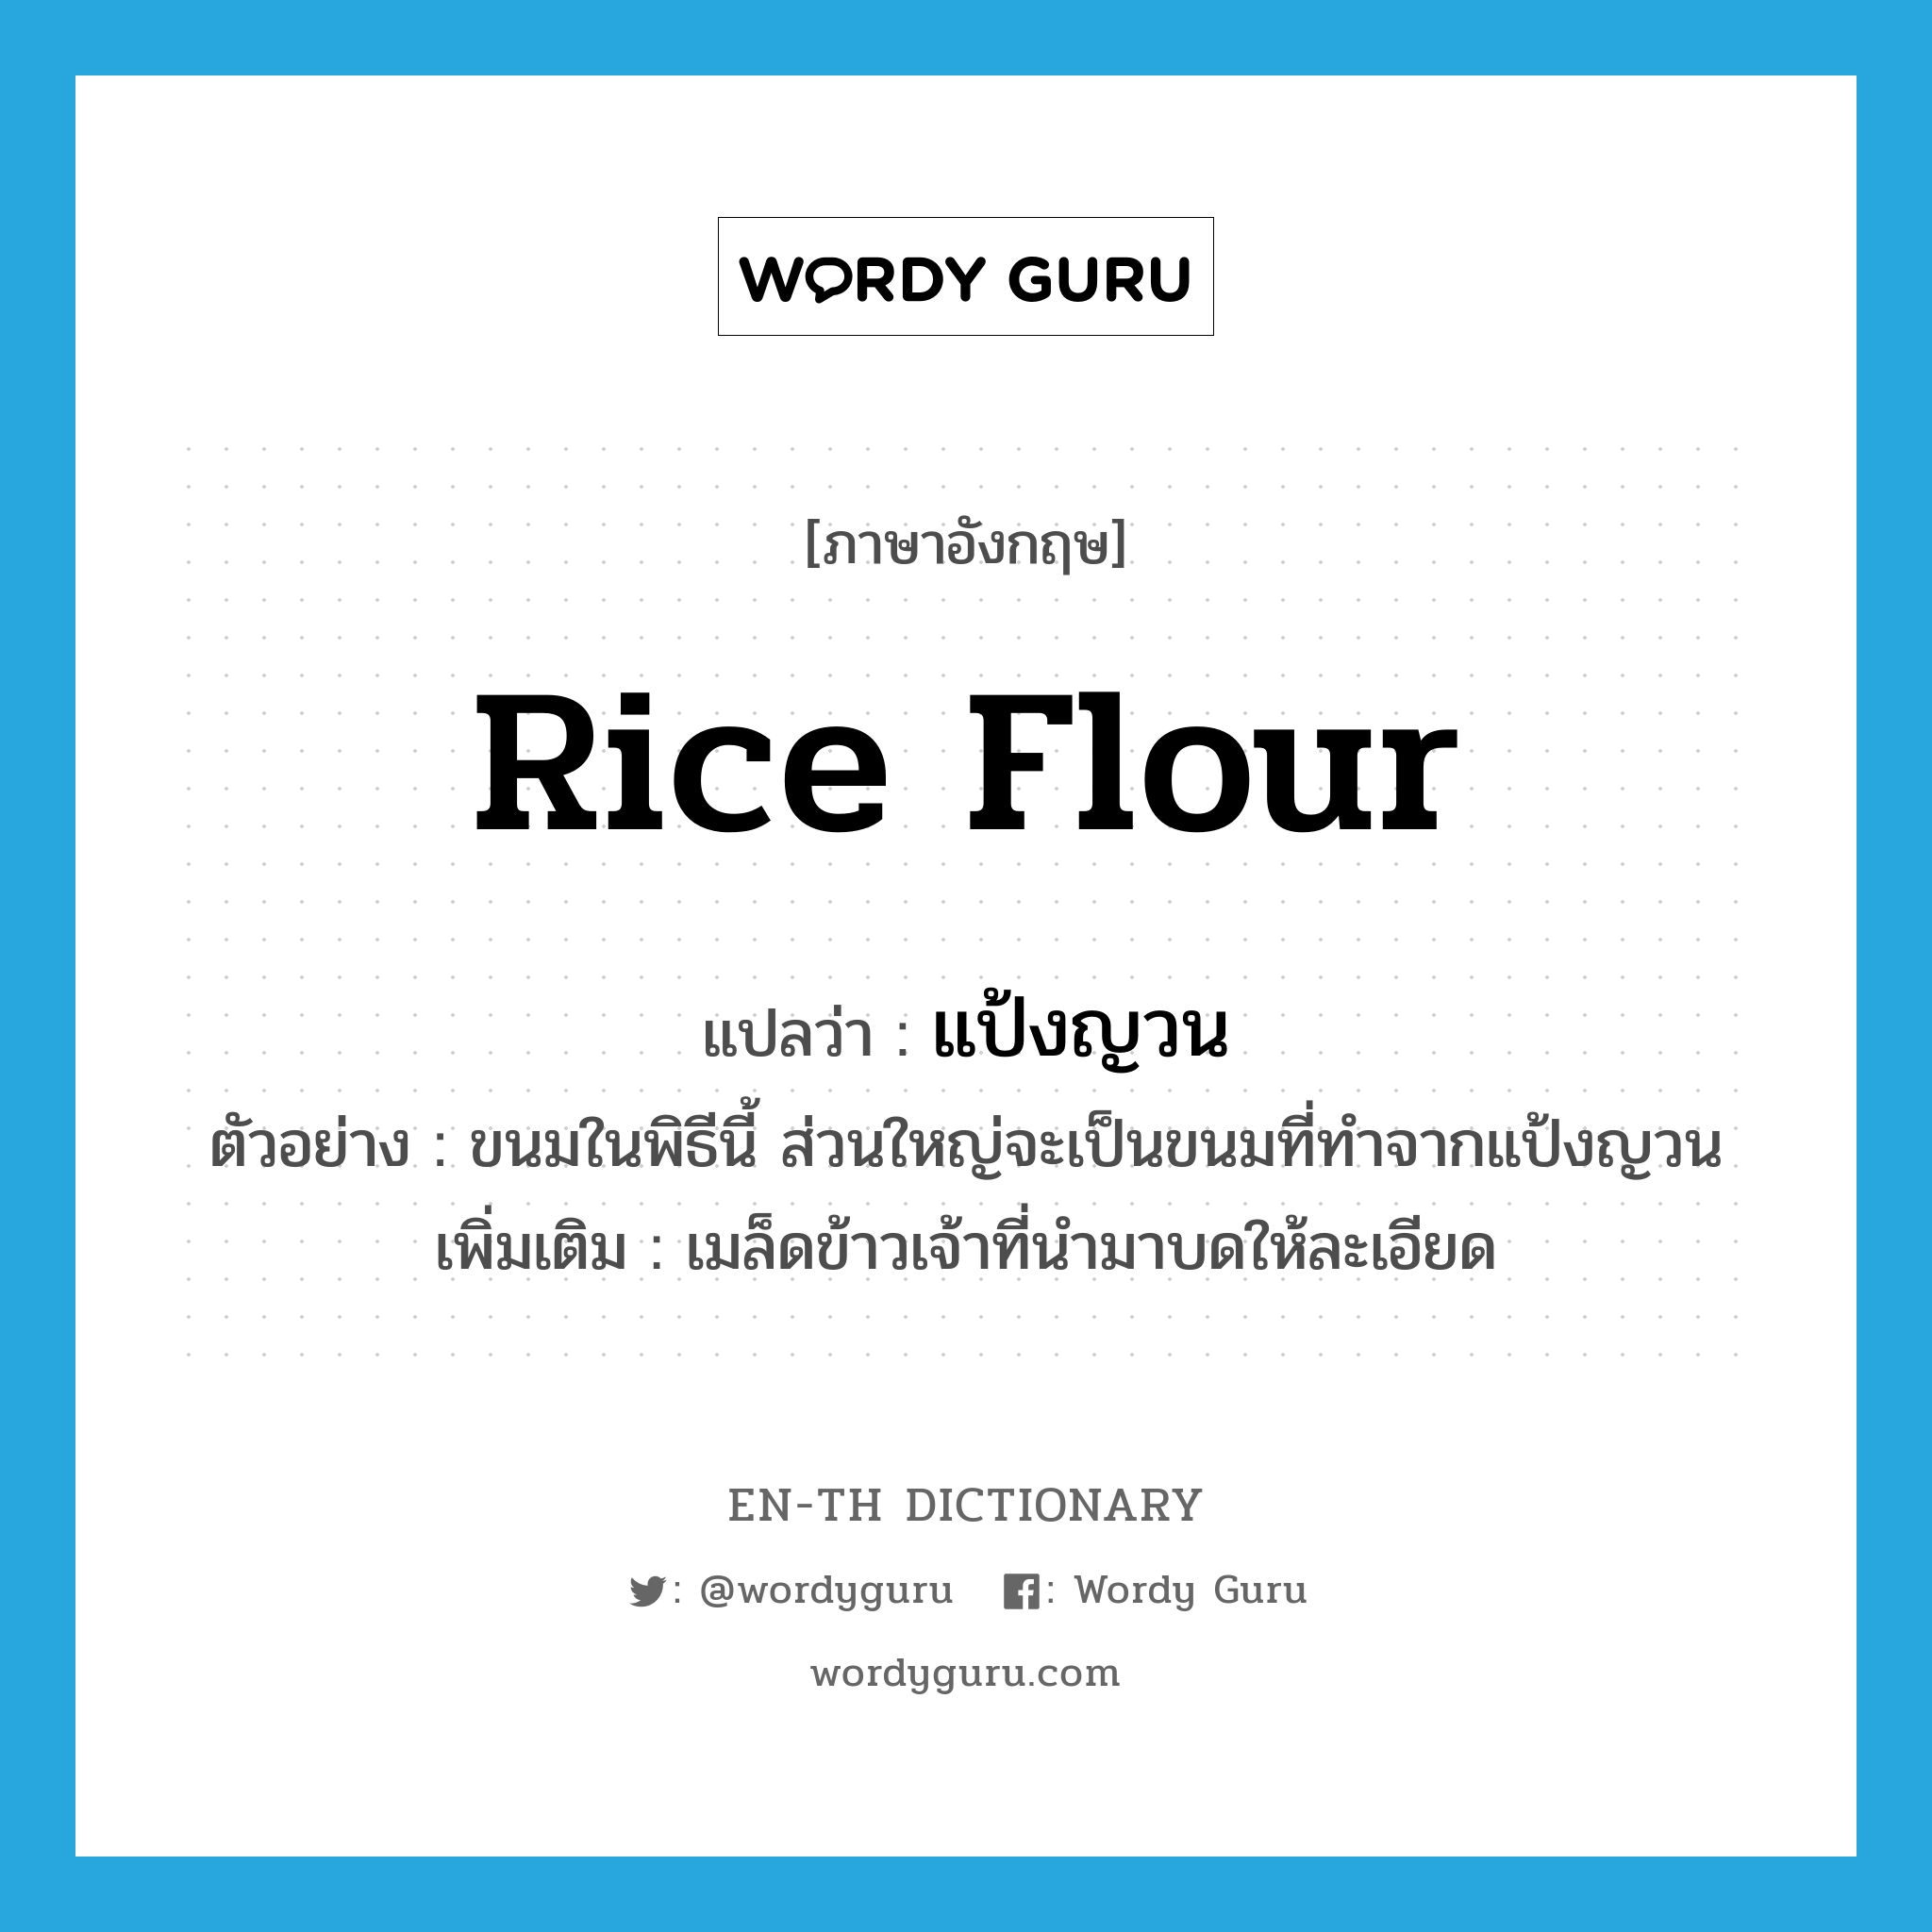 rice flour แปลว่า?, คำศัพท์ภาษาอังกฤษ rice flour แปลว่า แป้งญวน ประเภท N ตัวอย่าง ขนมในพิธีนี้ ส่วนใหญ่จะเป็นขนมที่ทำจากแป้งญวน เพิ่มเติม เมล็ดข้าวเจ้าที่นำมาบดให้ละเอียด หมวด N